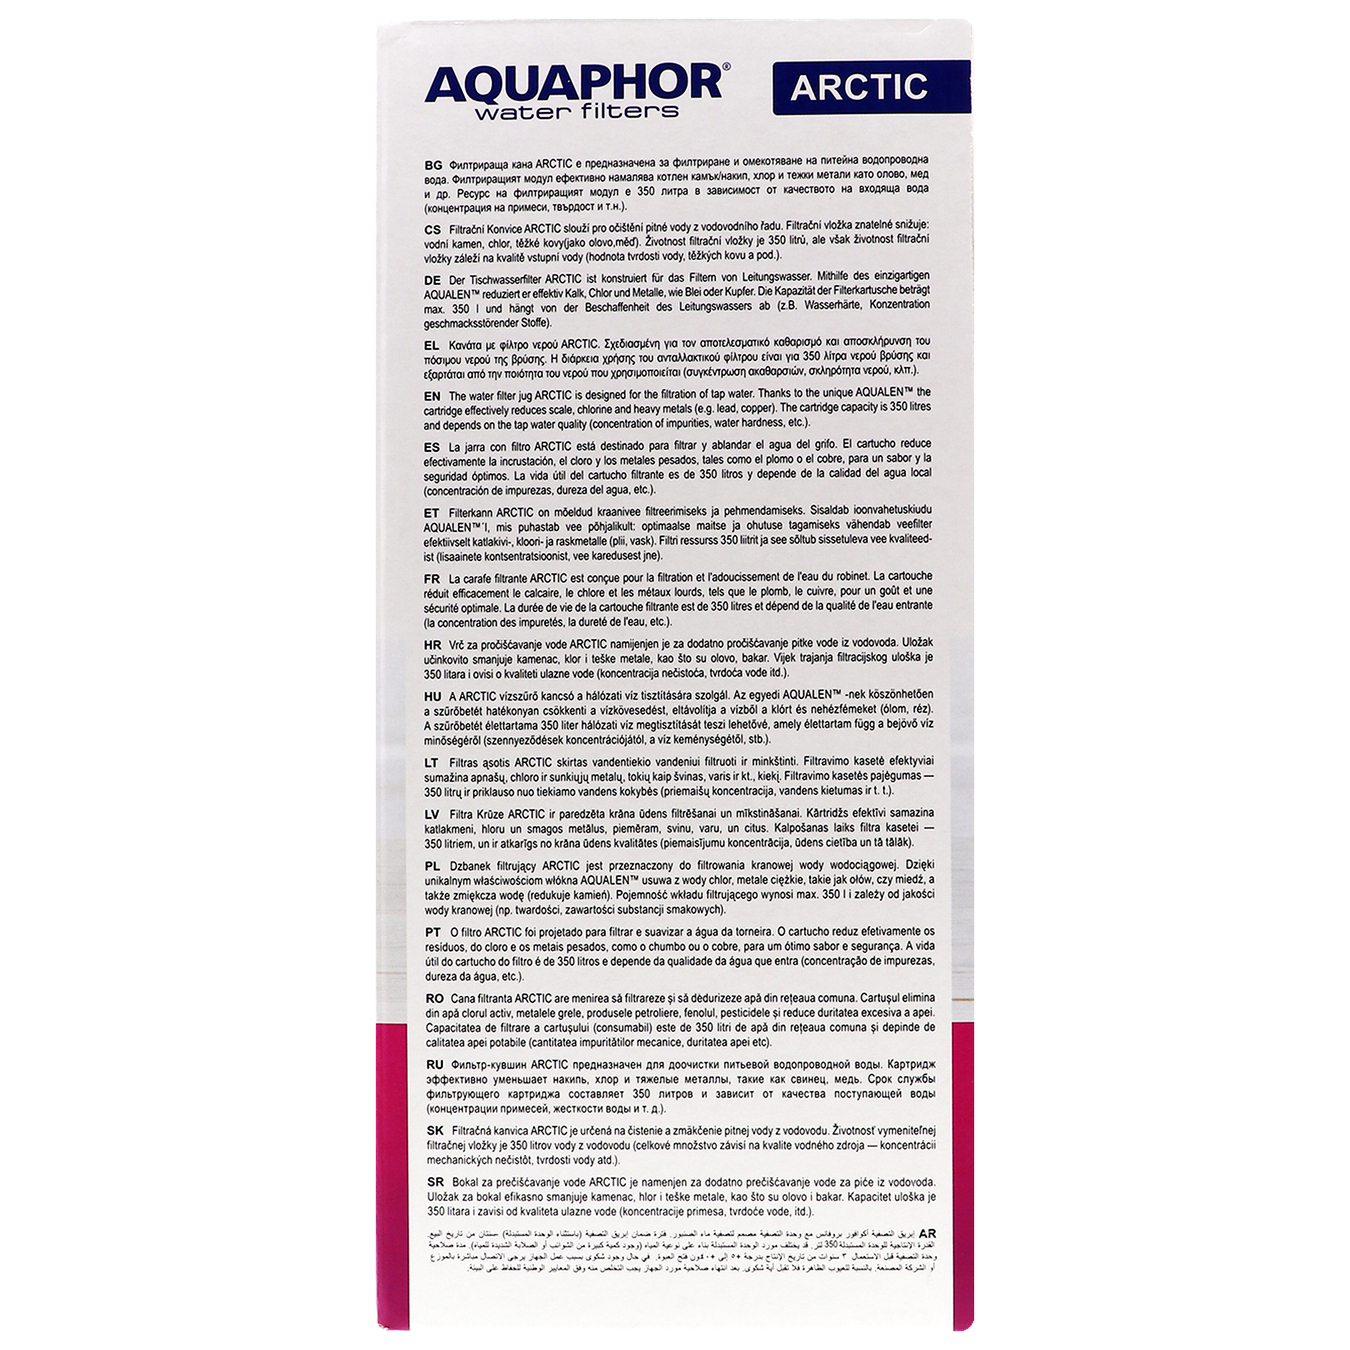 Aquaphor Arctic light green water purifier jug 4